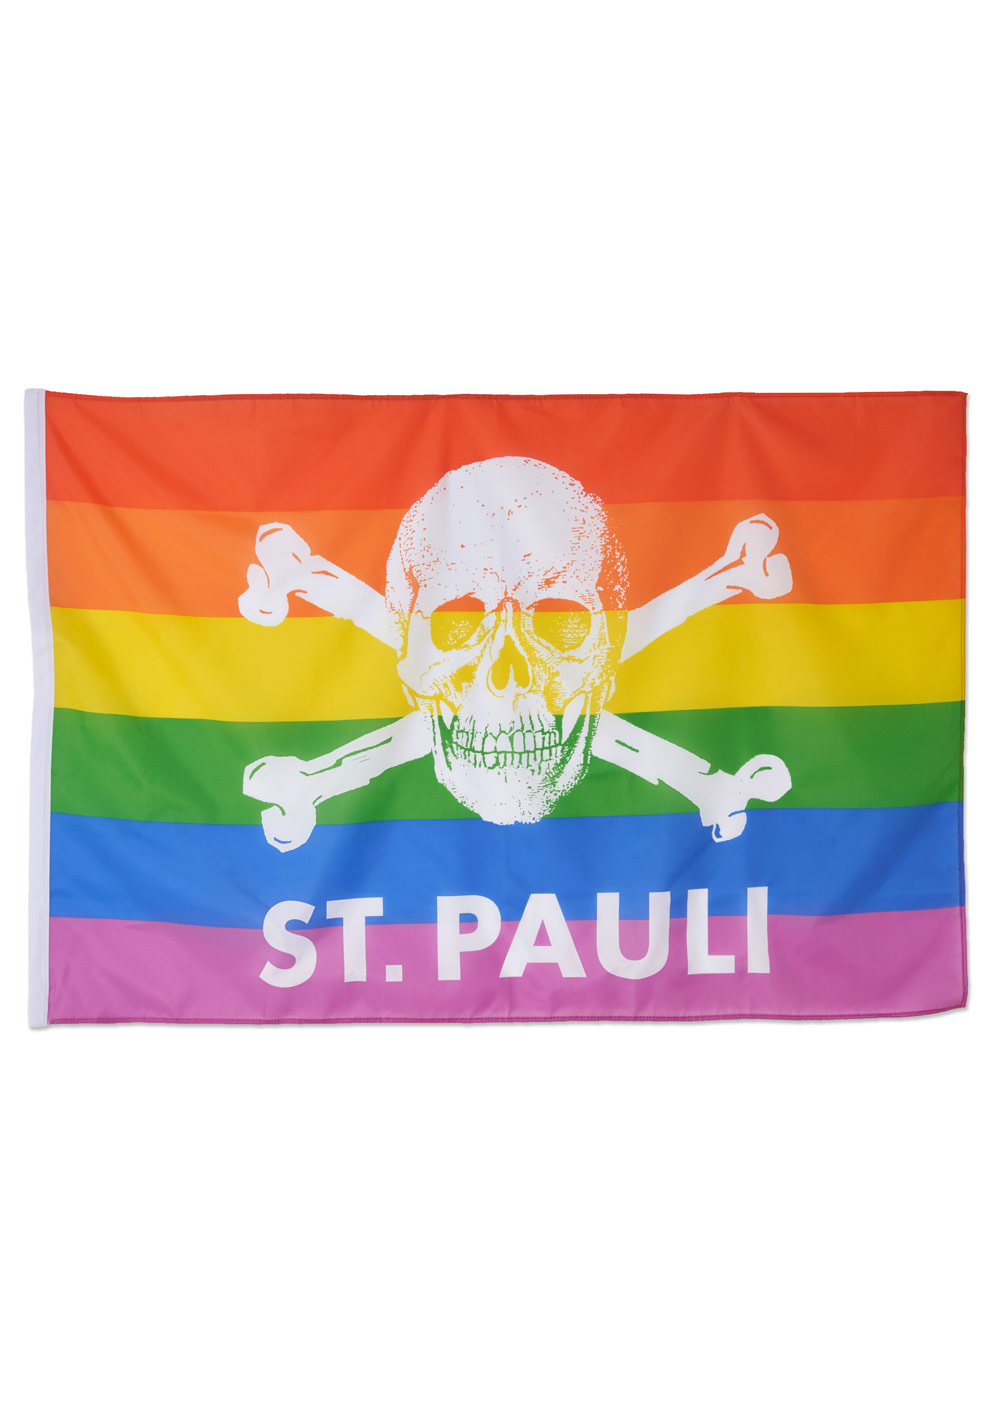 Skull and crossbones flag, rainbow